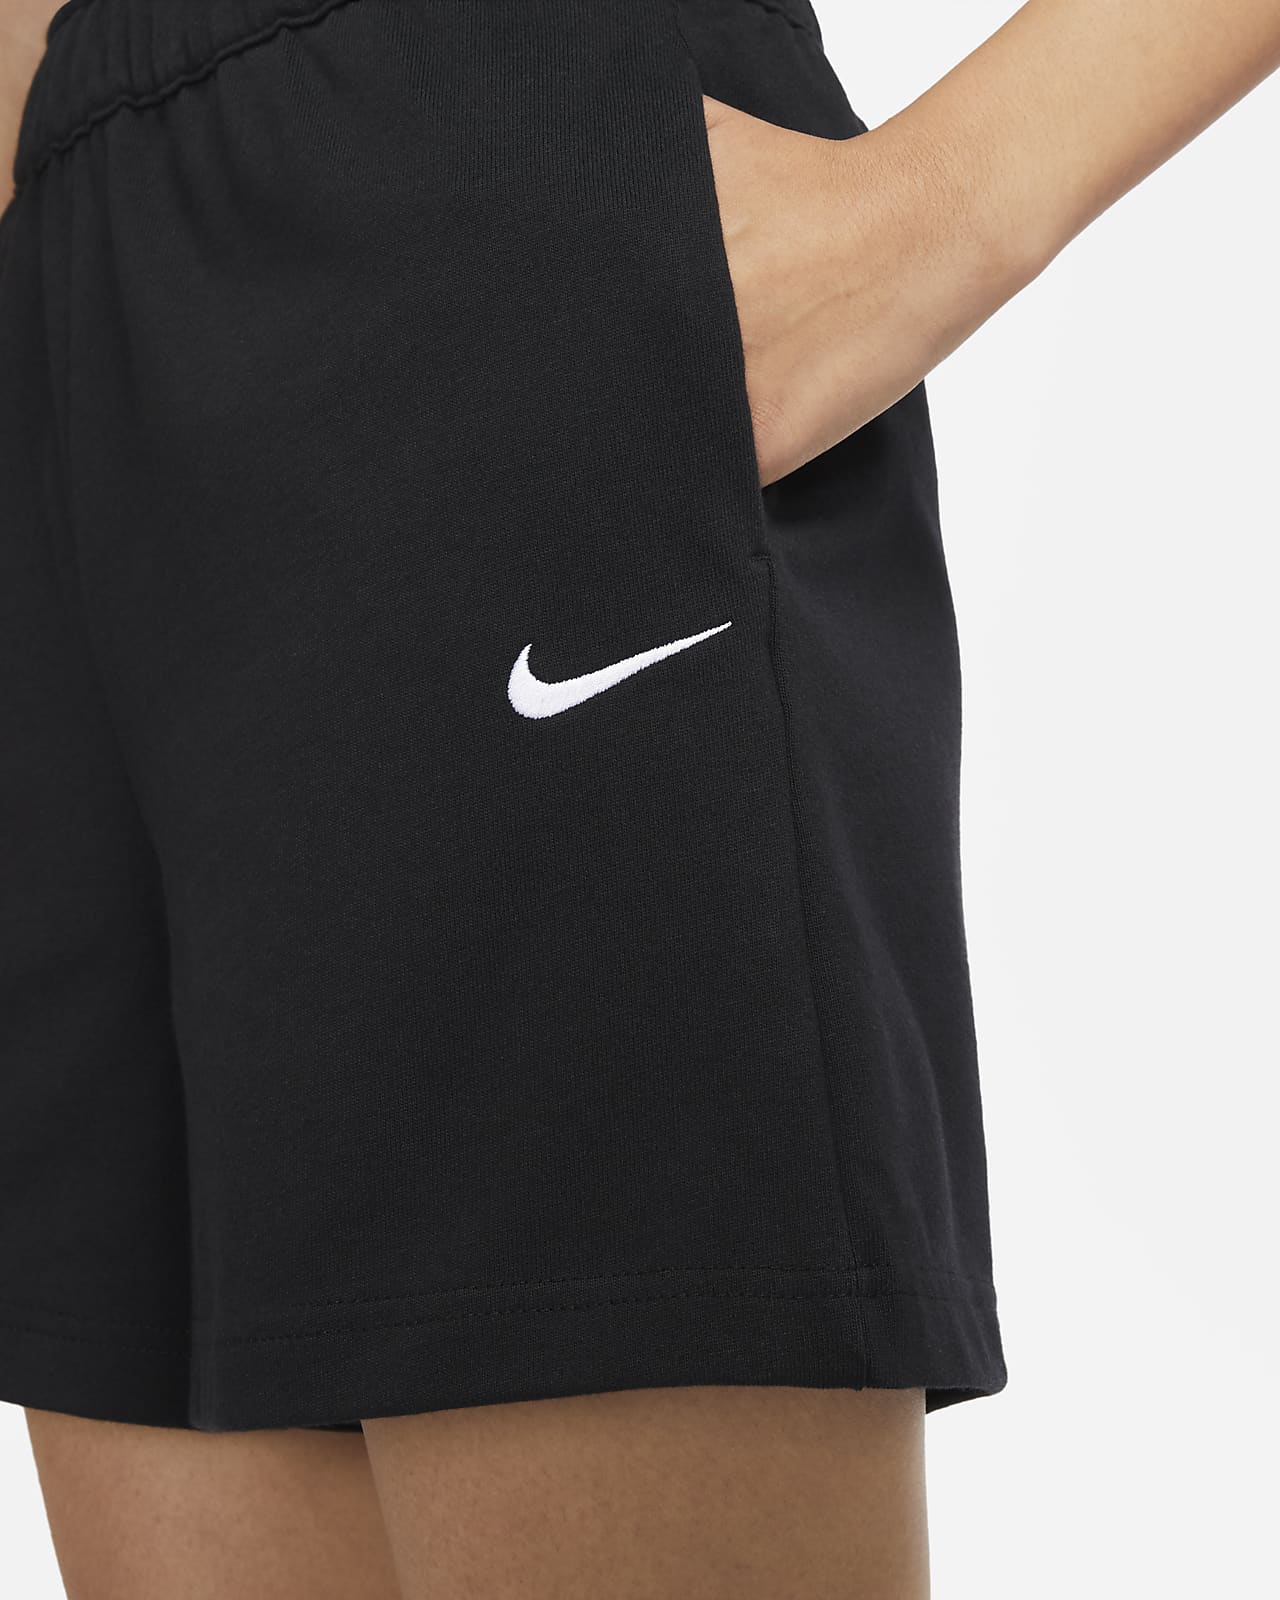 Nike Sportswear Women's Jersey Shorts. Nike VN